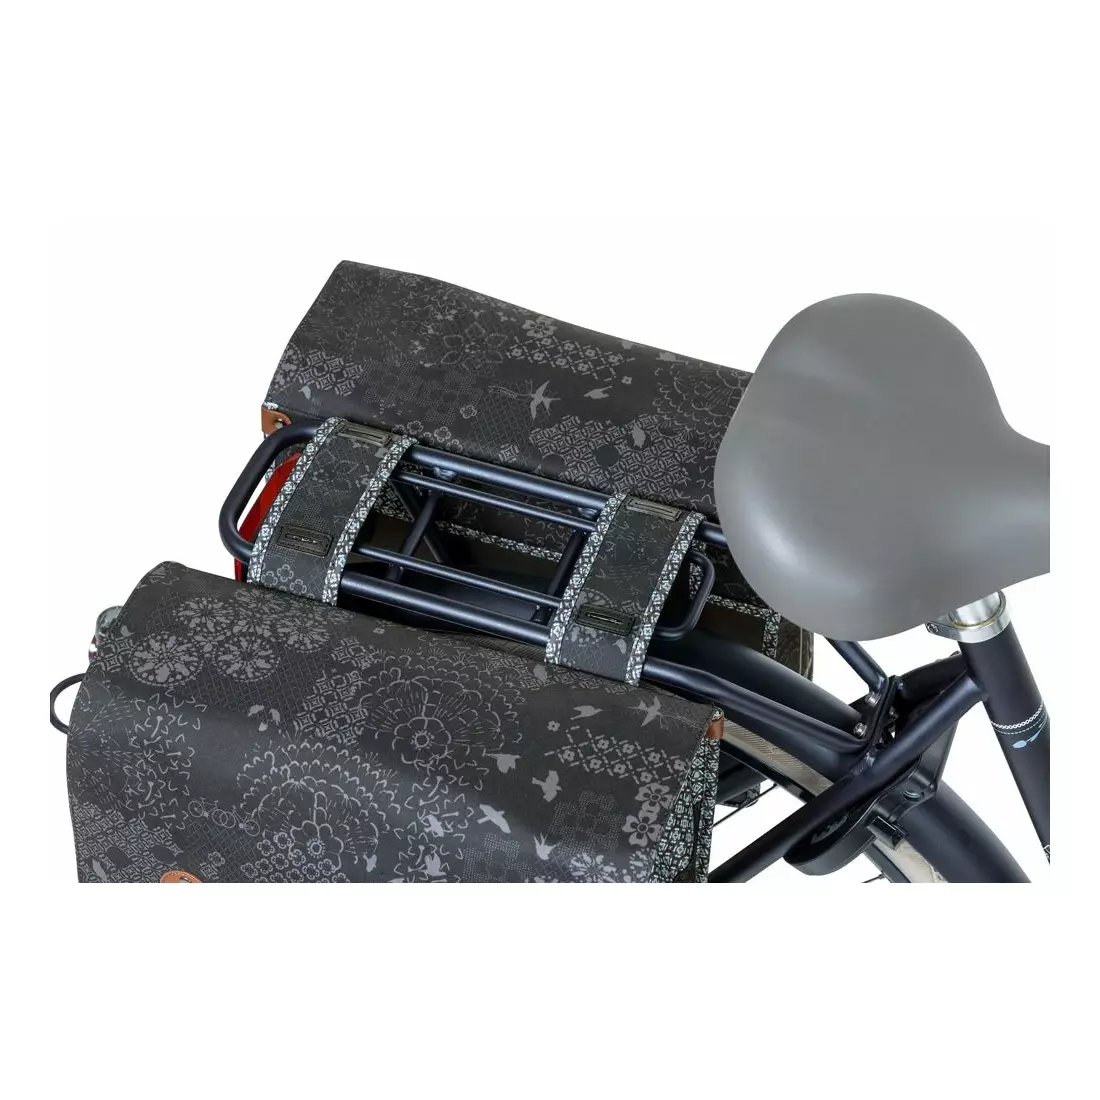 BASIL dvojitý zadní nosič jízdních kol boheme double bag 35L charcoal BAS-18013